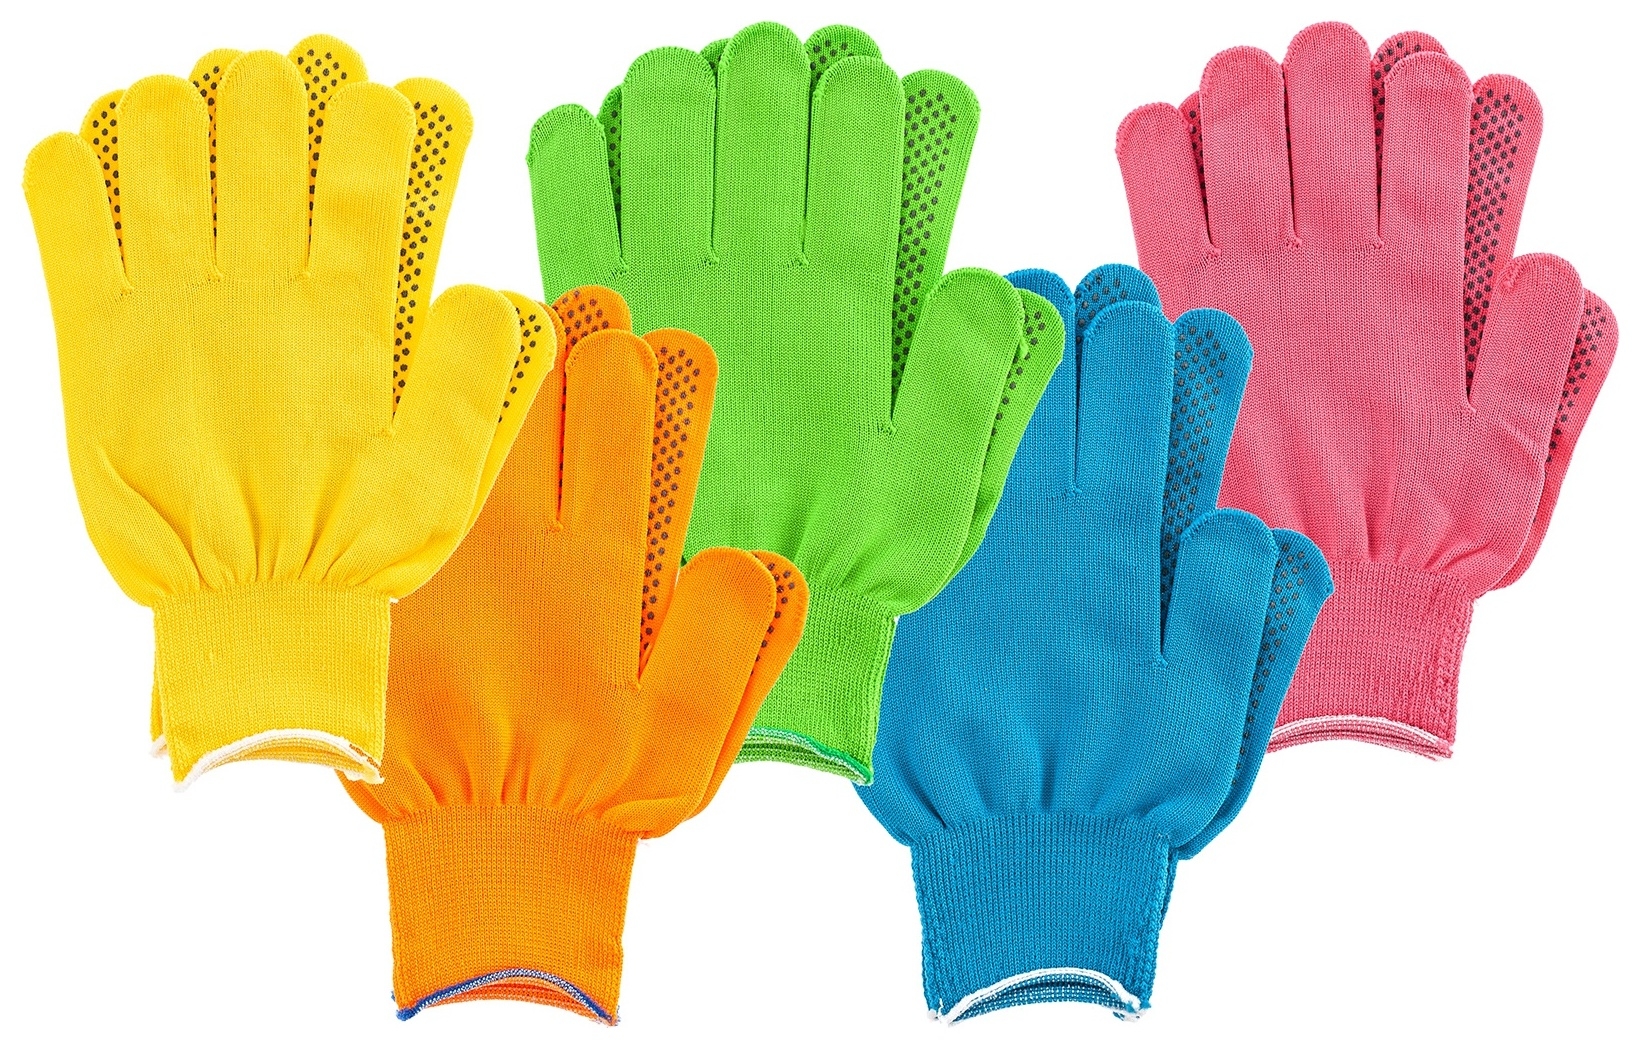 Перчатки в наборе, цвета: зеленый, розовая фуксия, желтый, синий, оранжевый, ПВХ точка, L